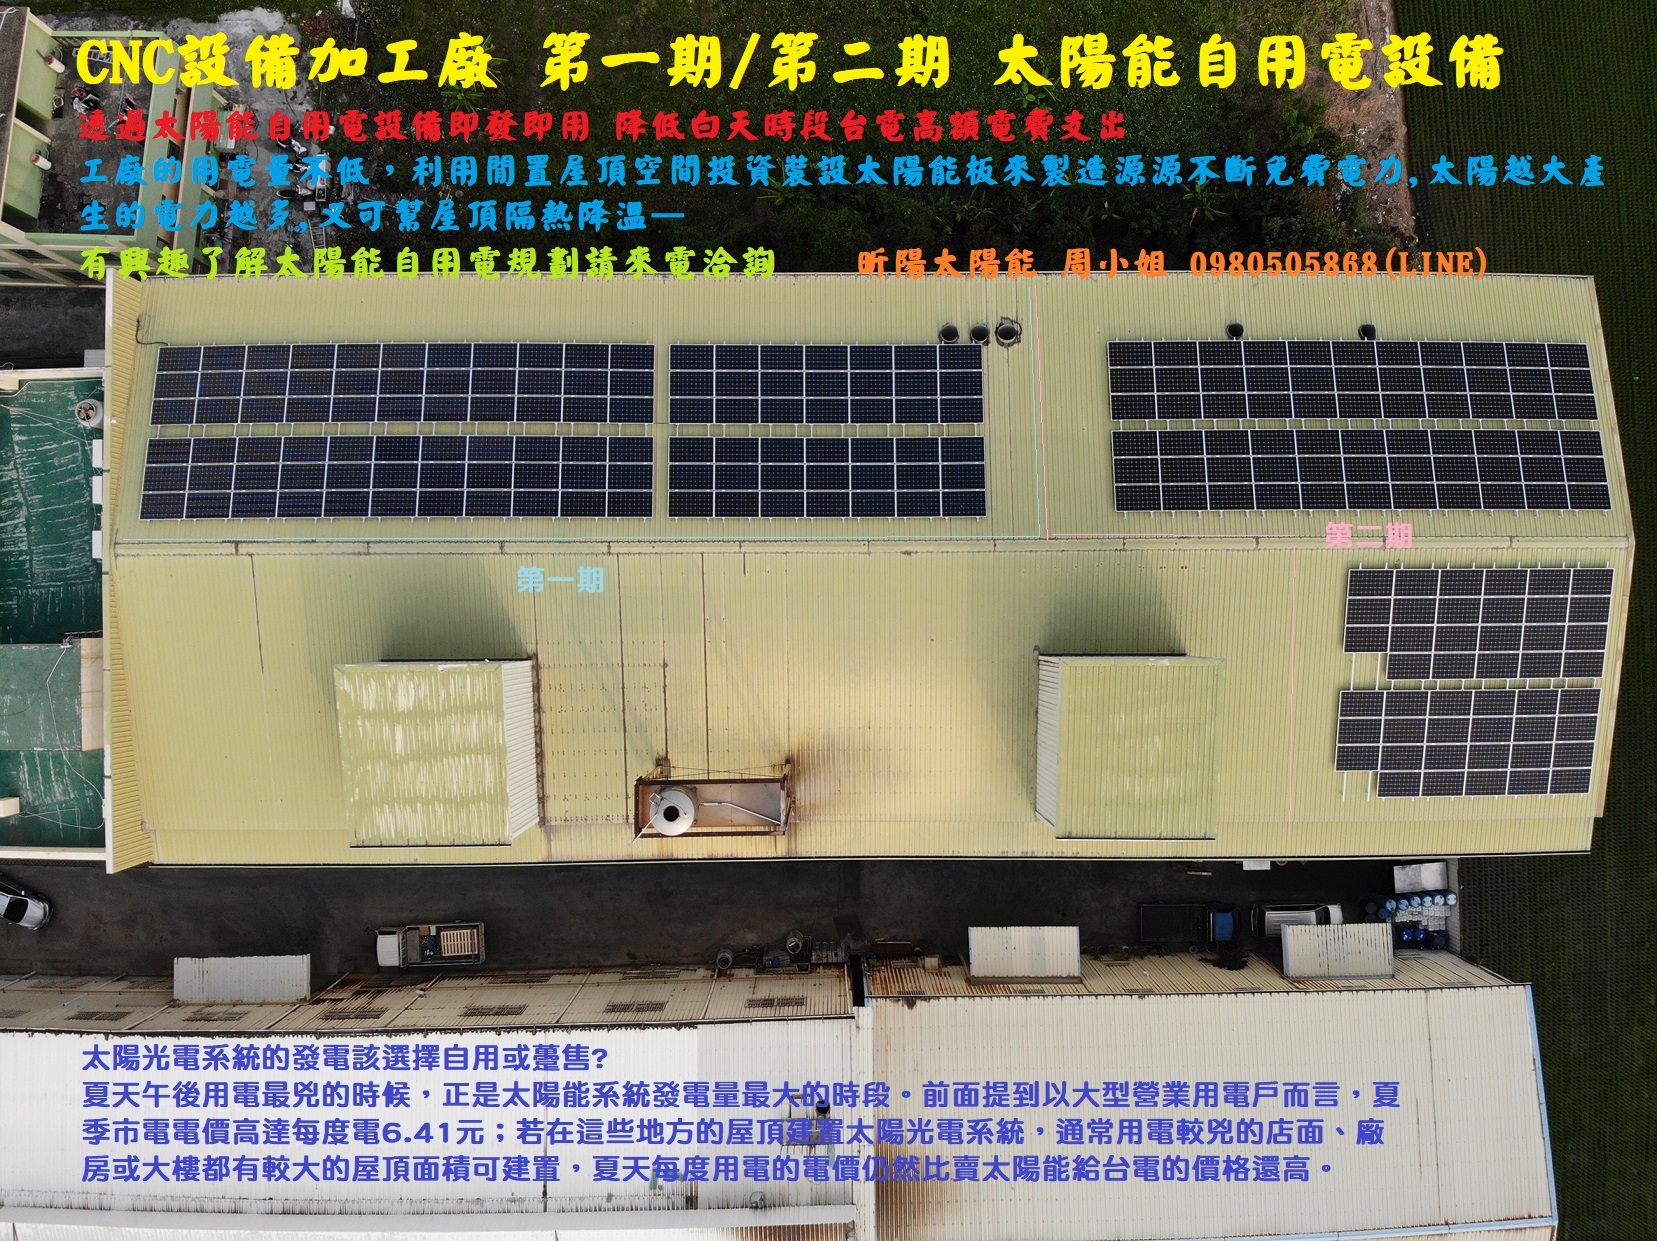 1601127262_彰化太陽能 自用型太陽光電 自發自用不賣電 CNC設備加工廠 第一期 第二期 太陽能自用電設備.jpg